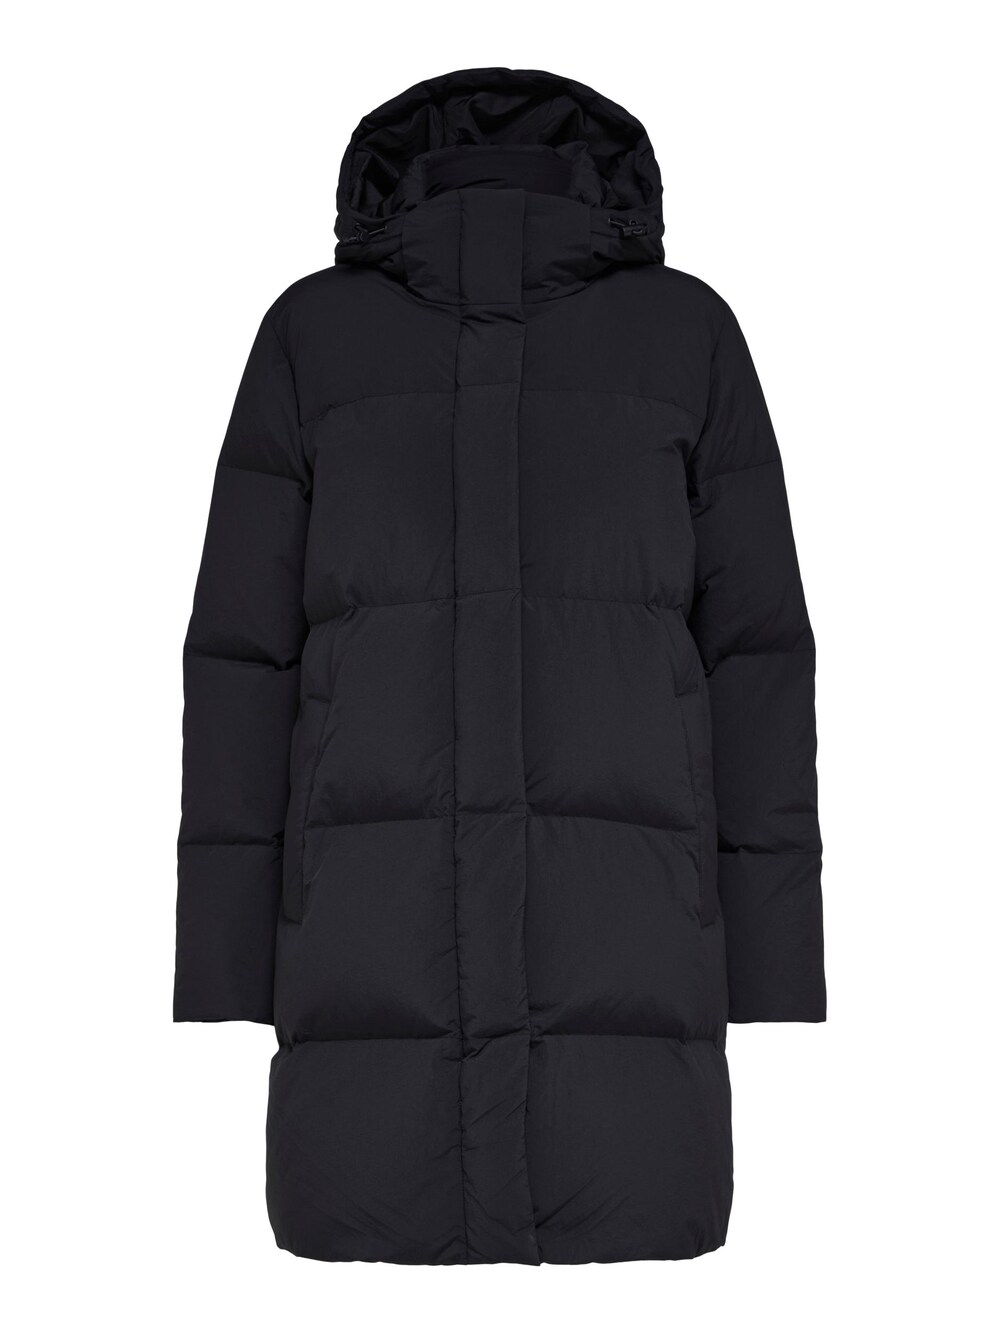 Межсезонное пальто Selected Rigga, черный межсезонное пальто selected new element черный